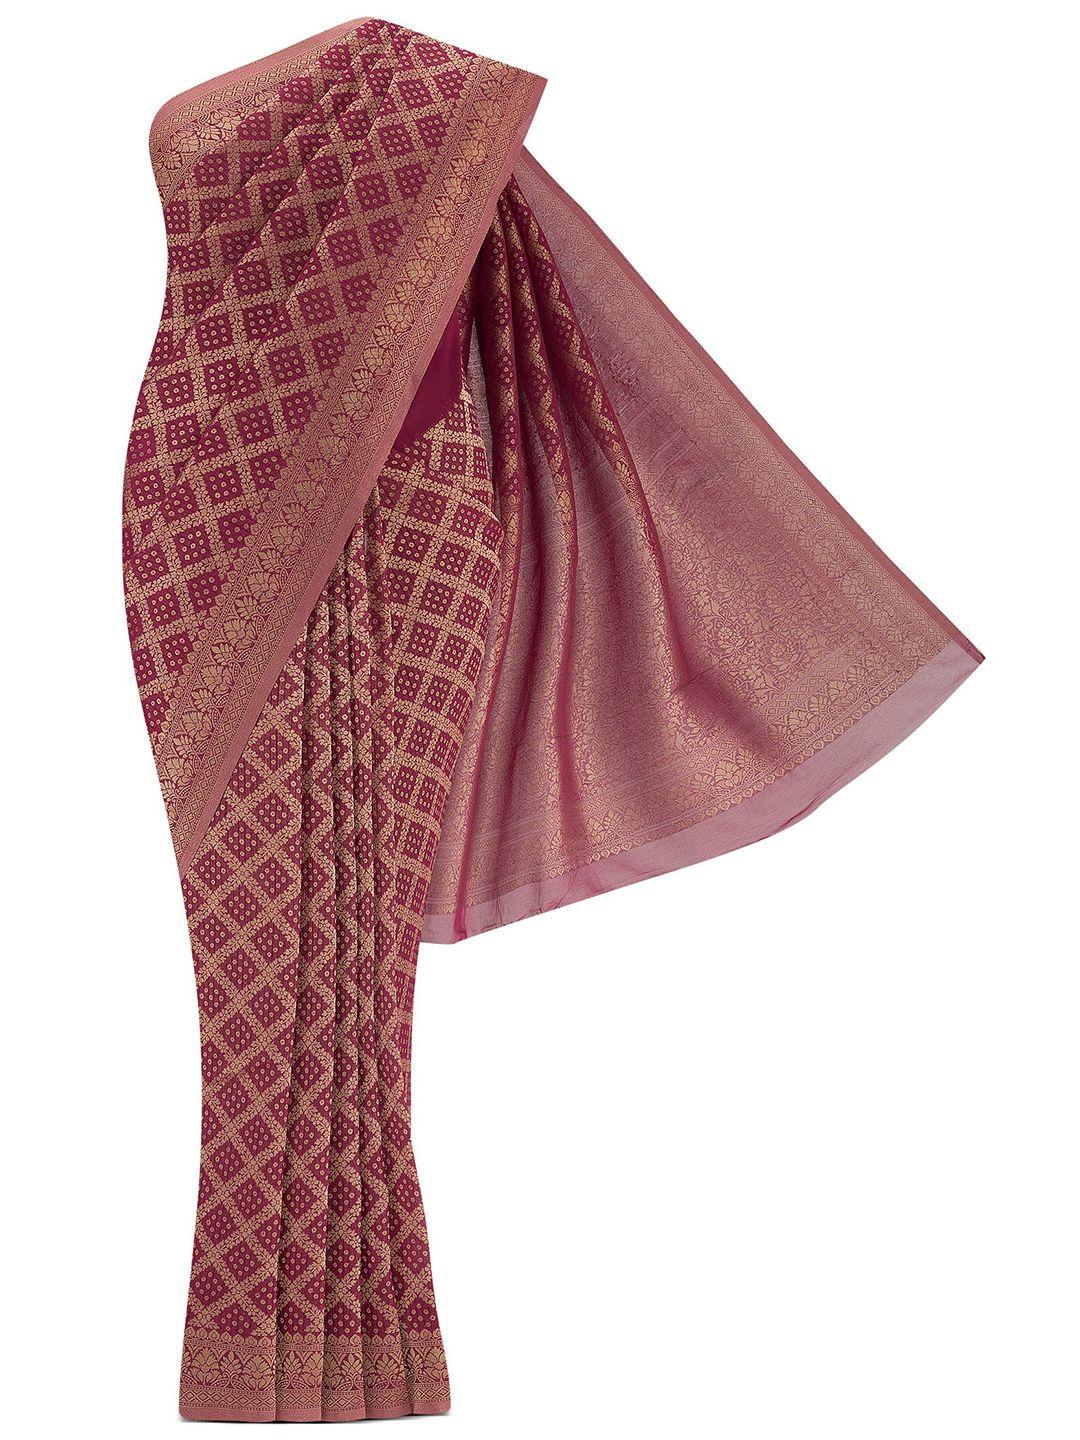 nalli-woven-design-zari-poly-georgette-mysore-silk-saree